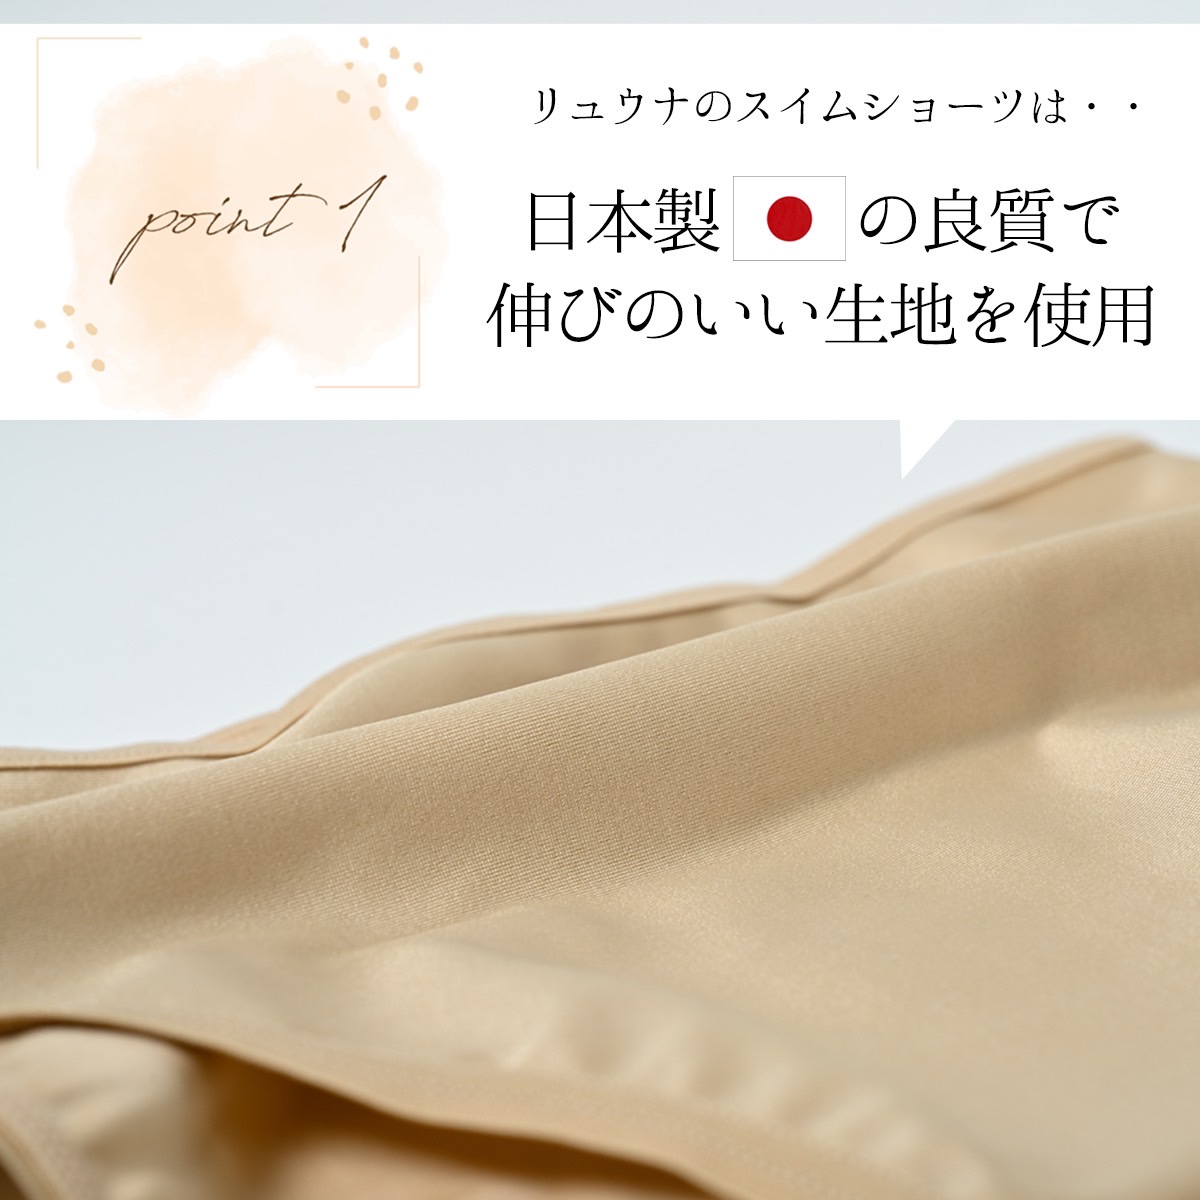 [ отметка 10 раз!& купон ] купальный костюм женский внутренний шорты пояс высокий талия большой размер сделано в Японии ryuunaSY275